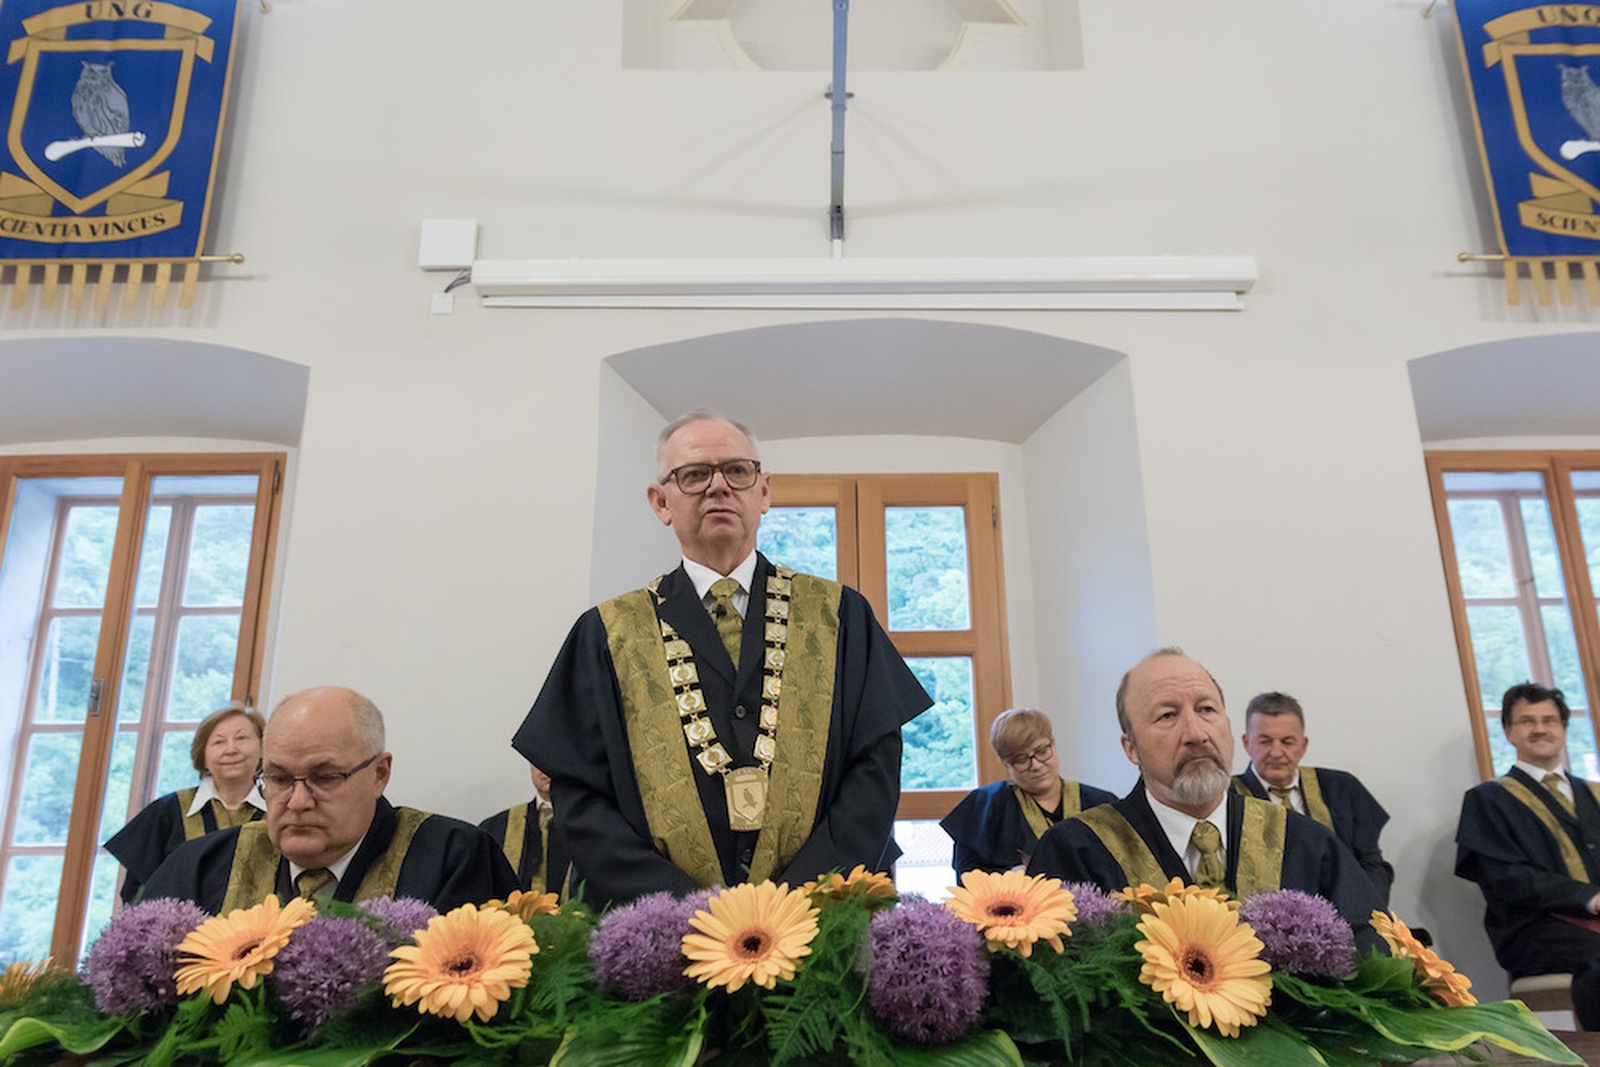 Rector, Vice-rectors and Deans of the University of Nova Gorica. Photo: Miha Godec